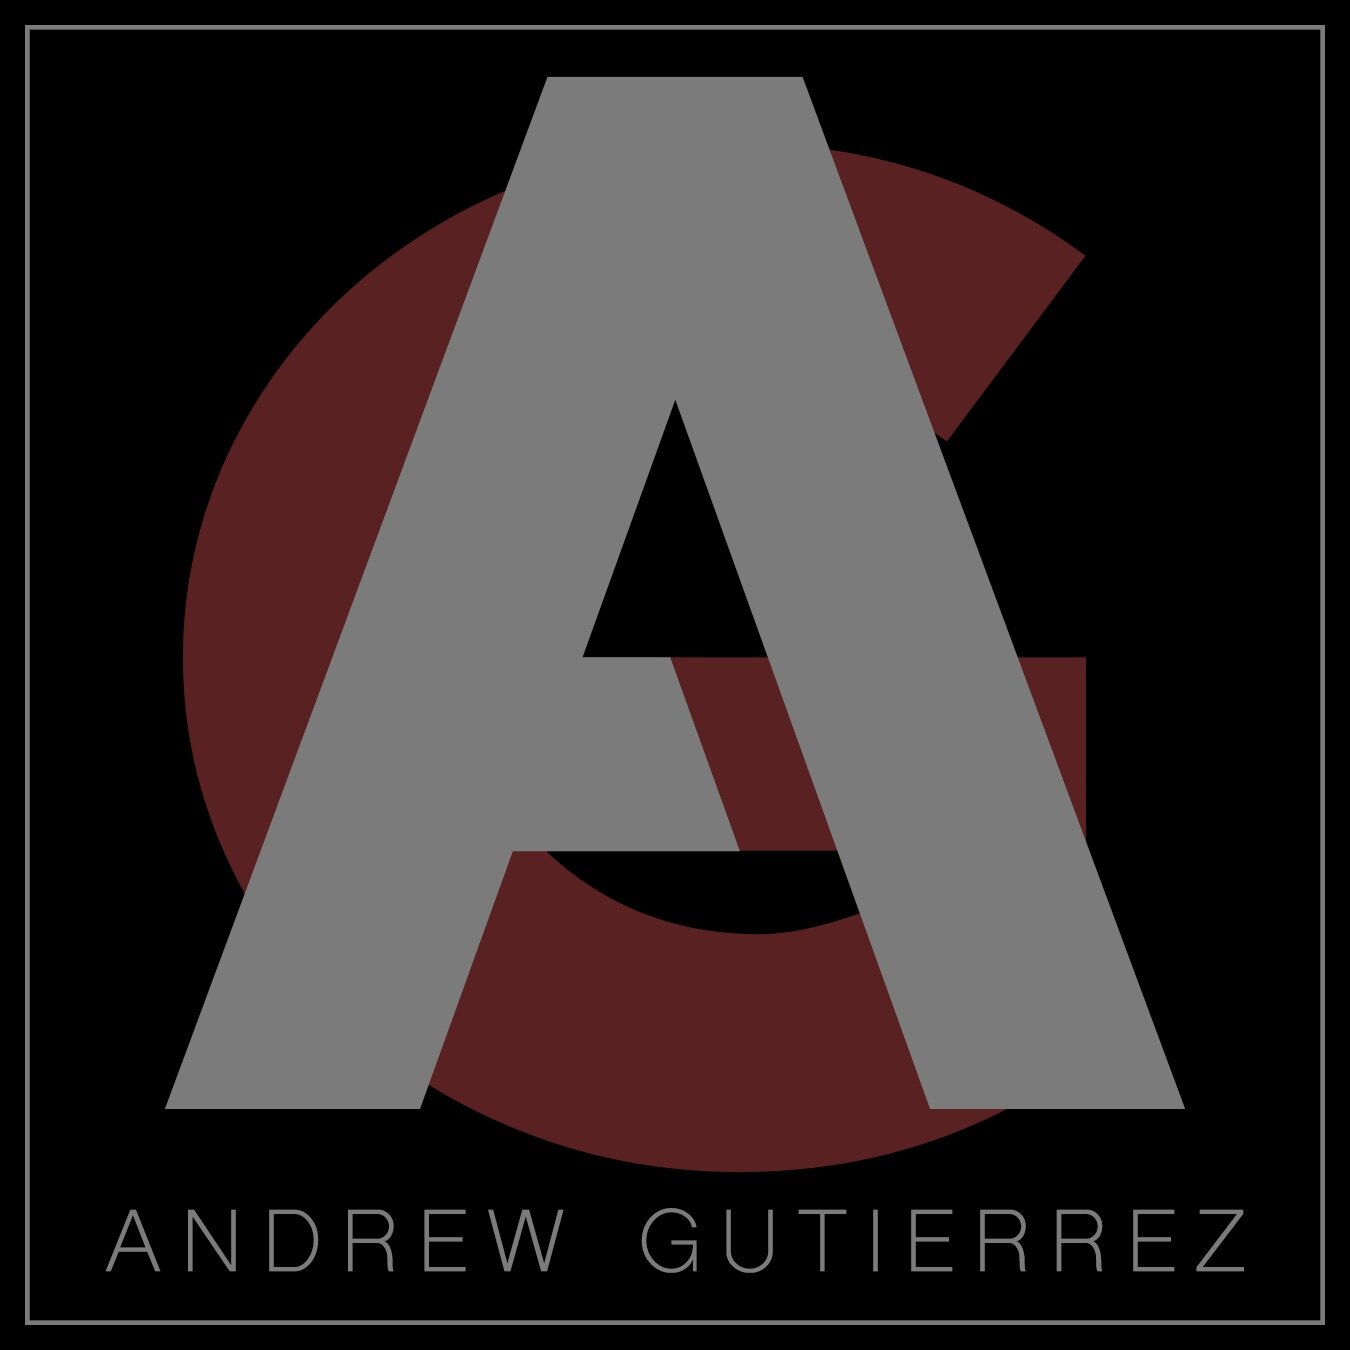 Andrew Gutierrez